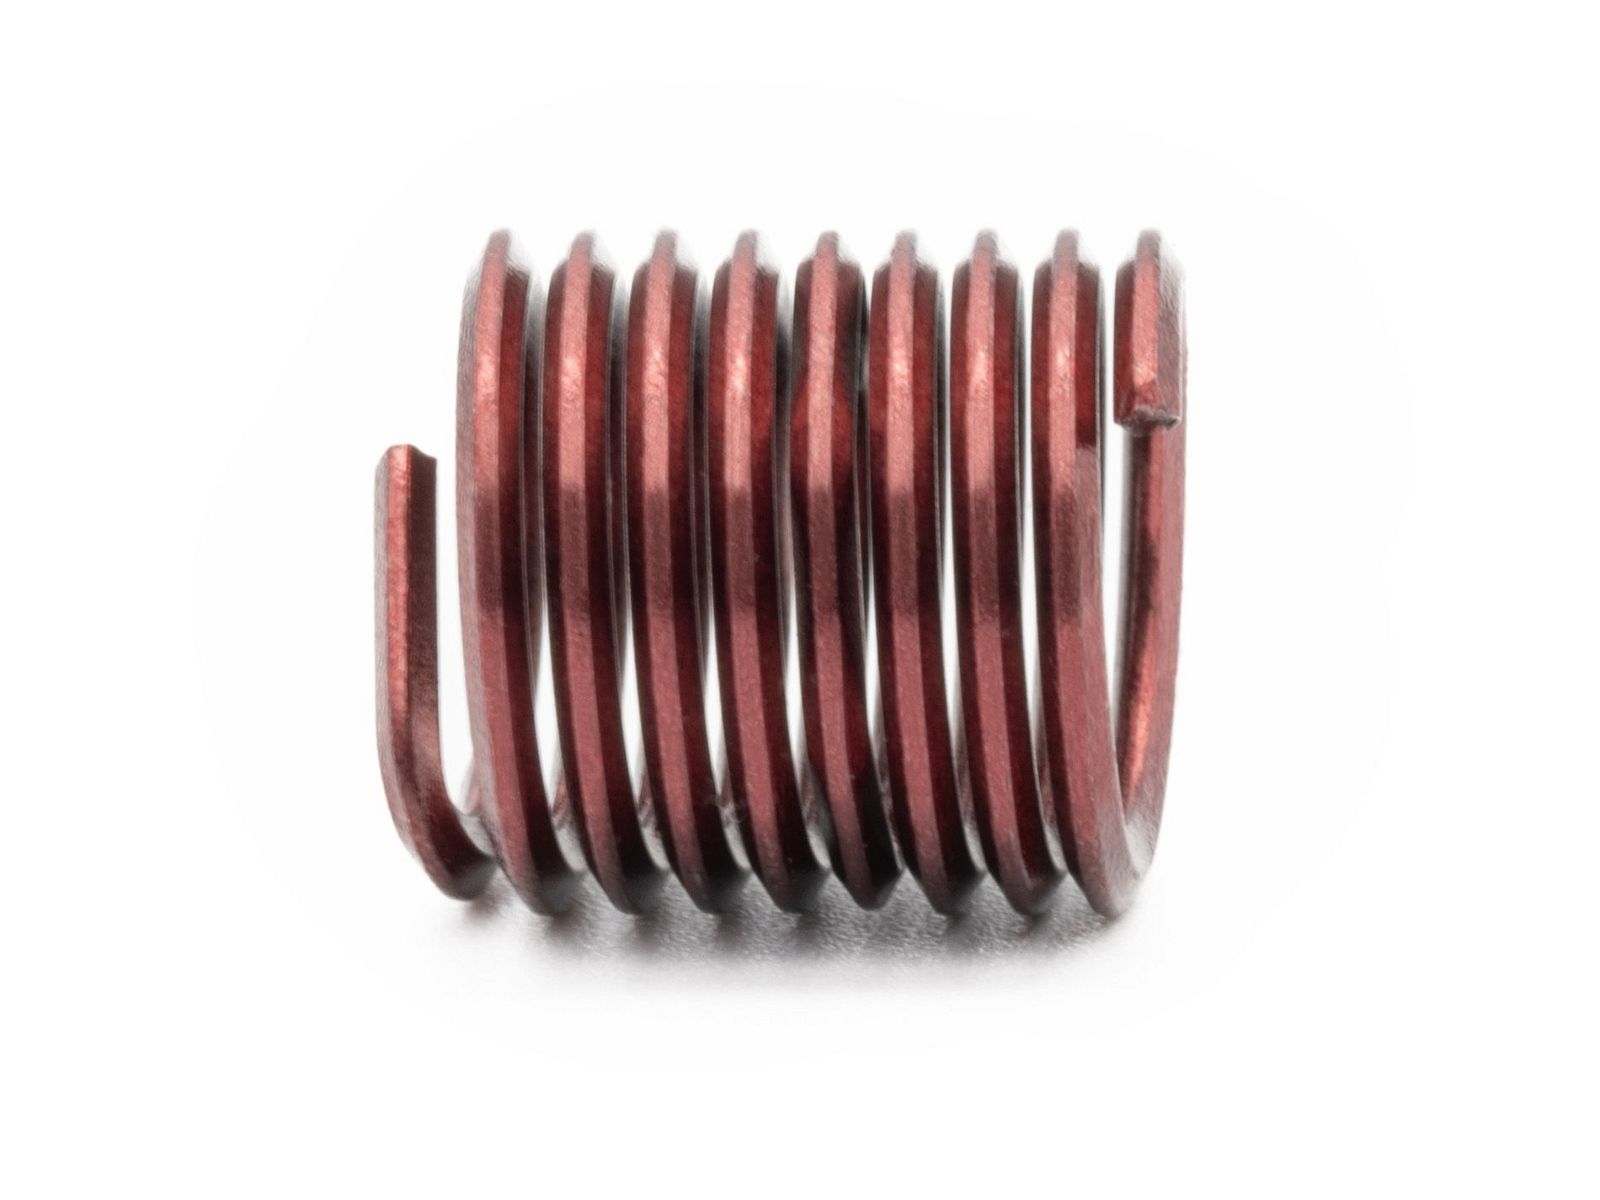 BaerCoil Wire Thread Inserts M 12 x 1.75 - 1.5 D (18 mm) - screw grip (screw locking) - 100 pcs.